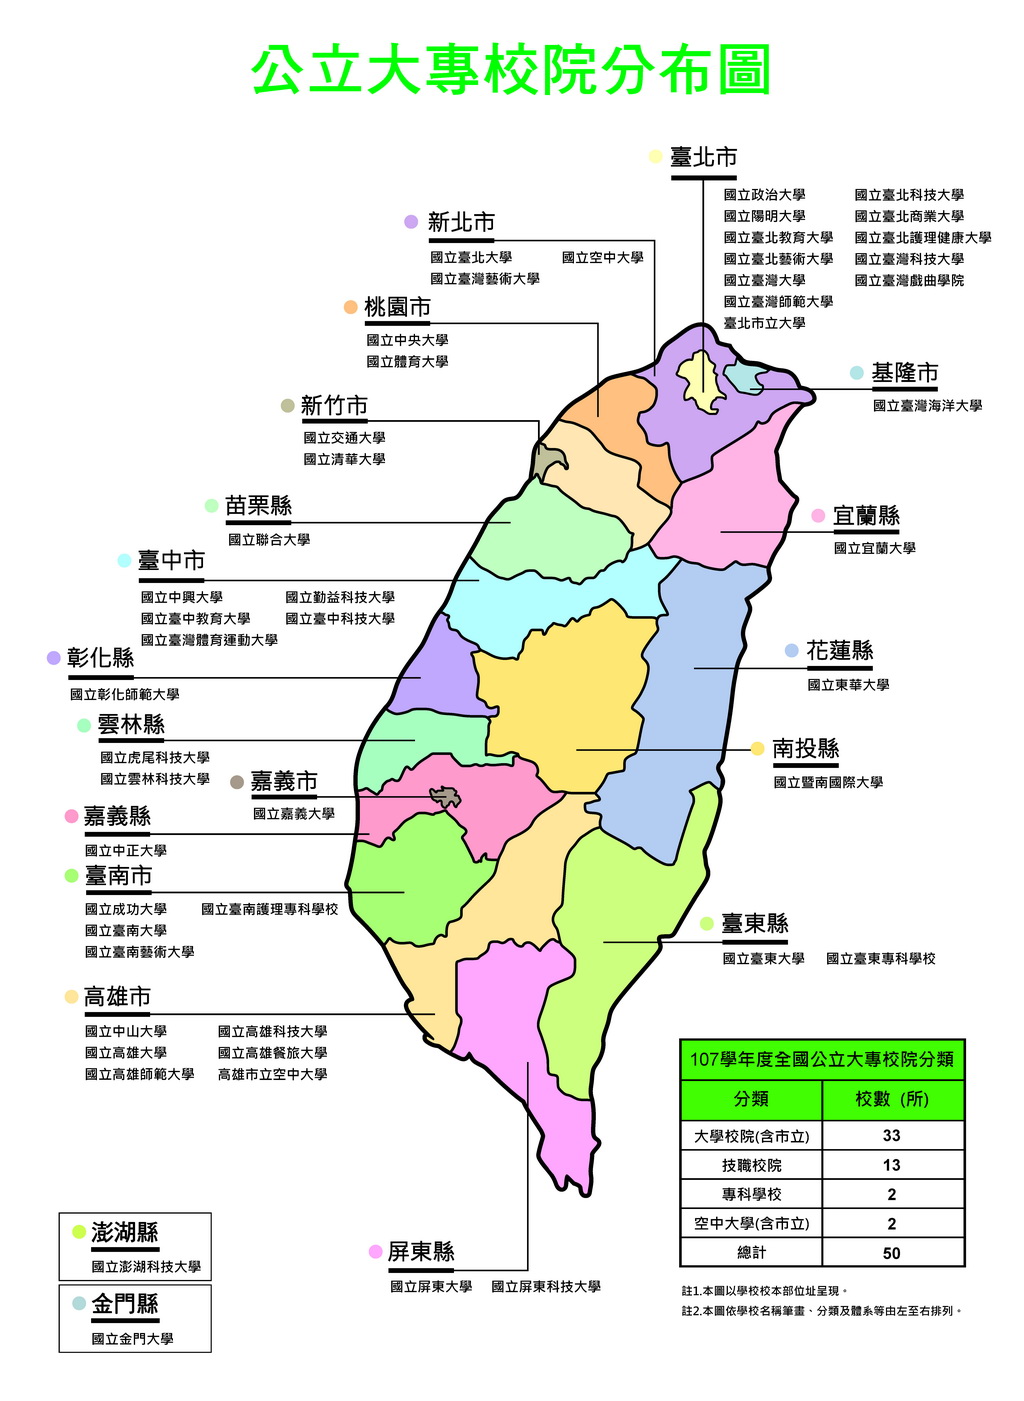 臺灣公立大專院校分佈圖